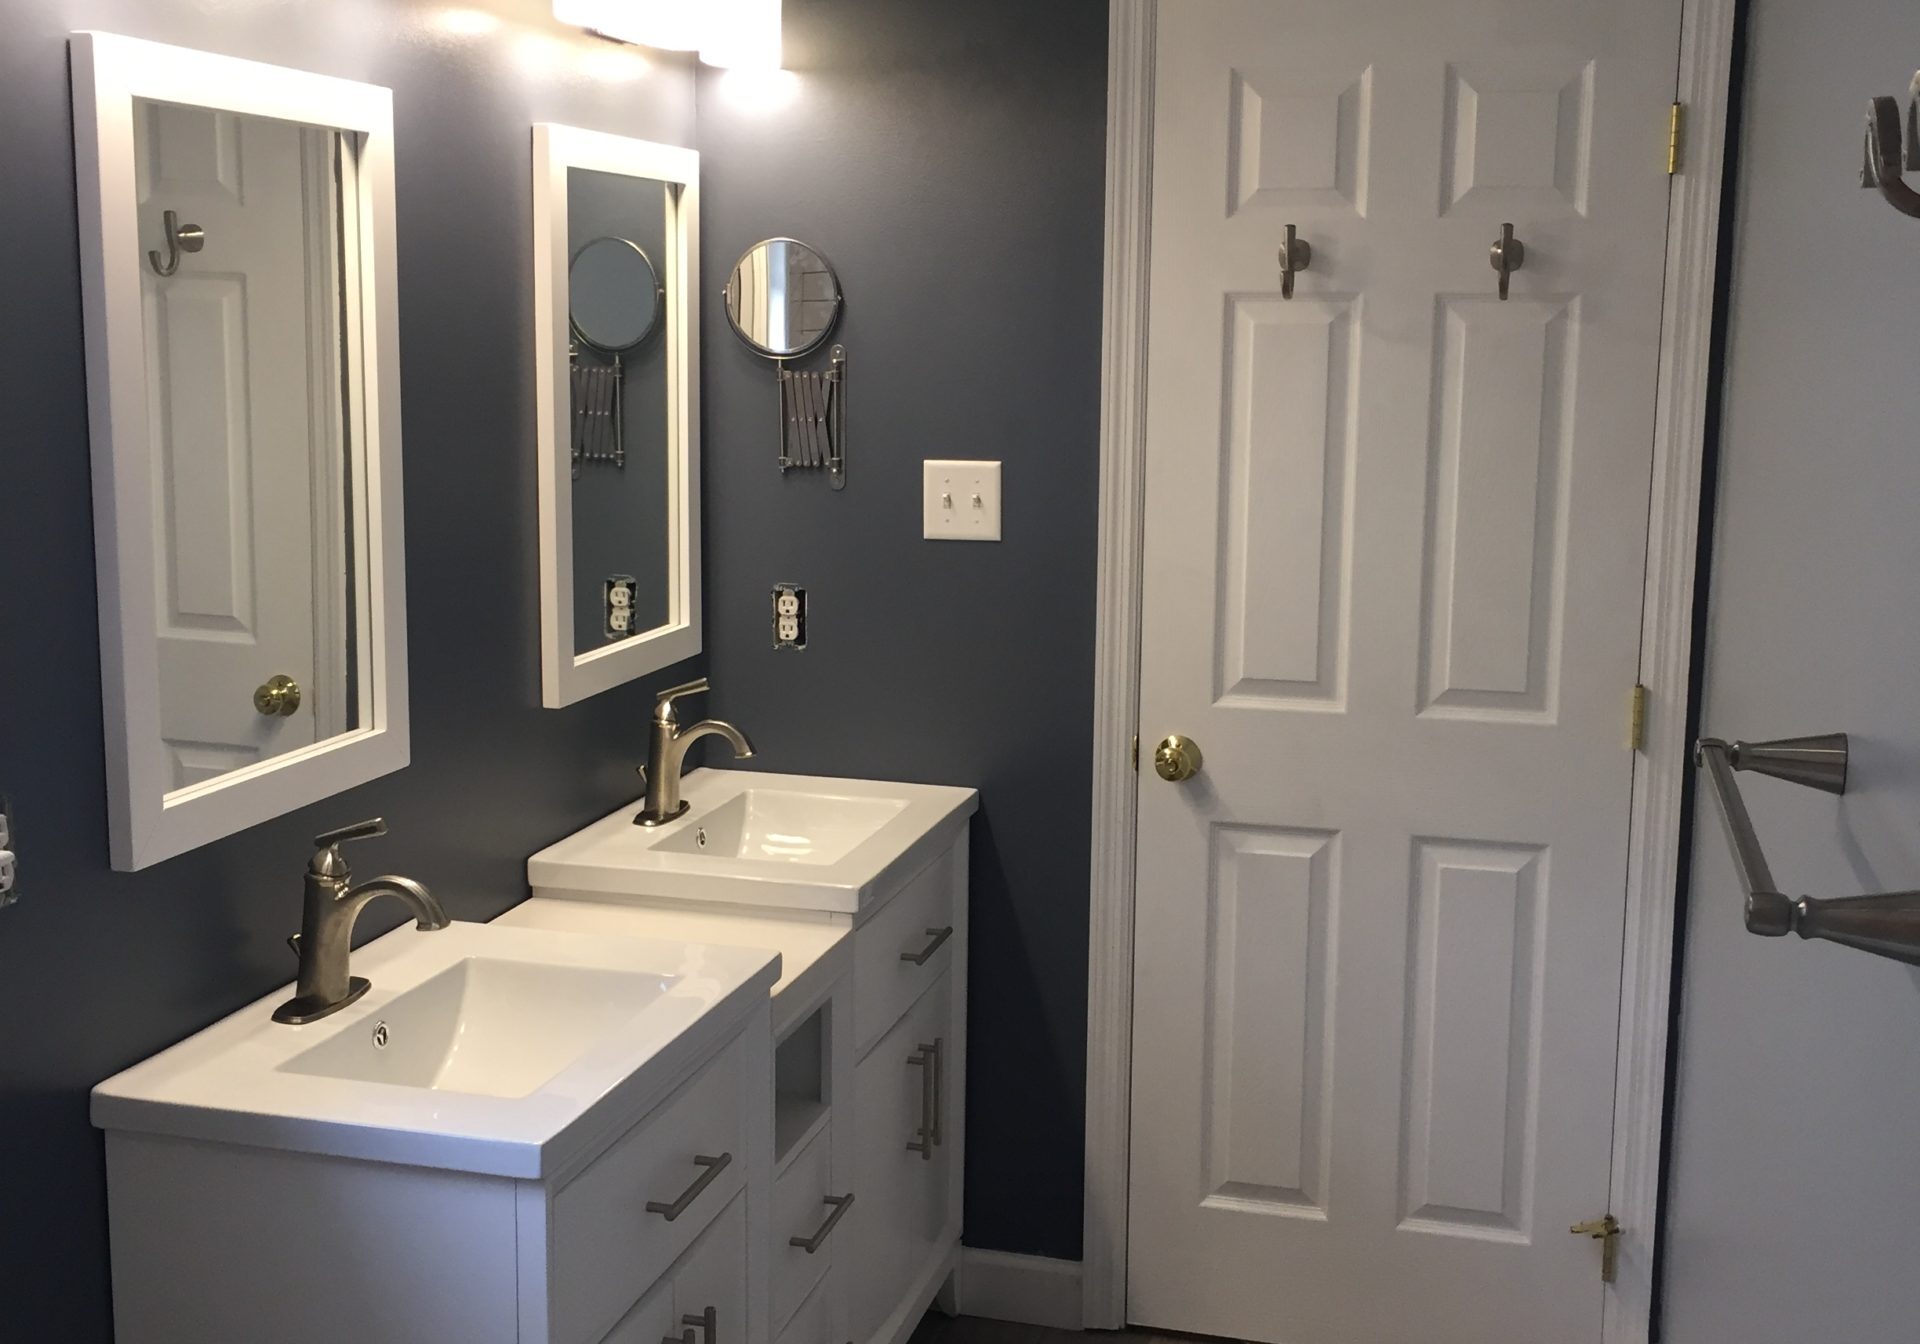 Bathroom Remodel - Top Knotch Construction, General Contractor, Pennsylvania